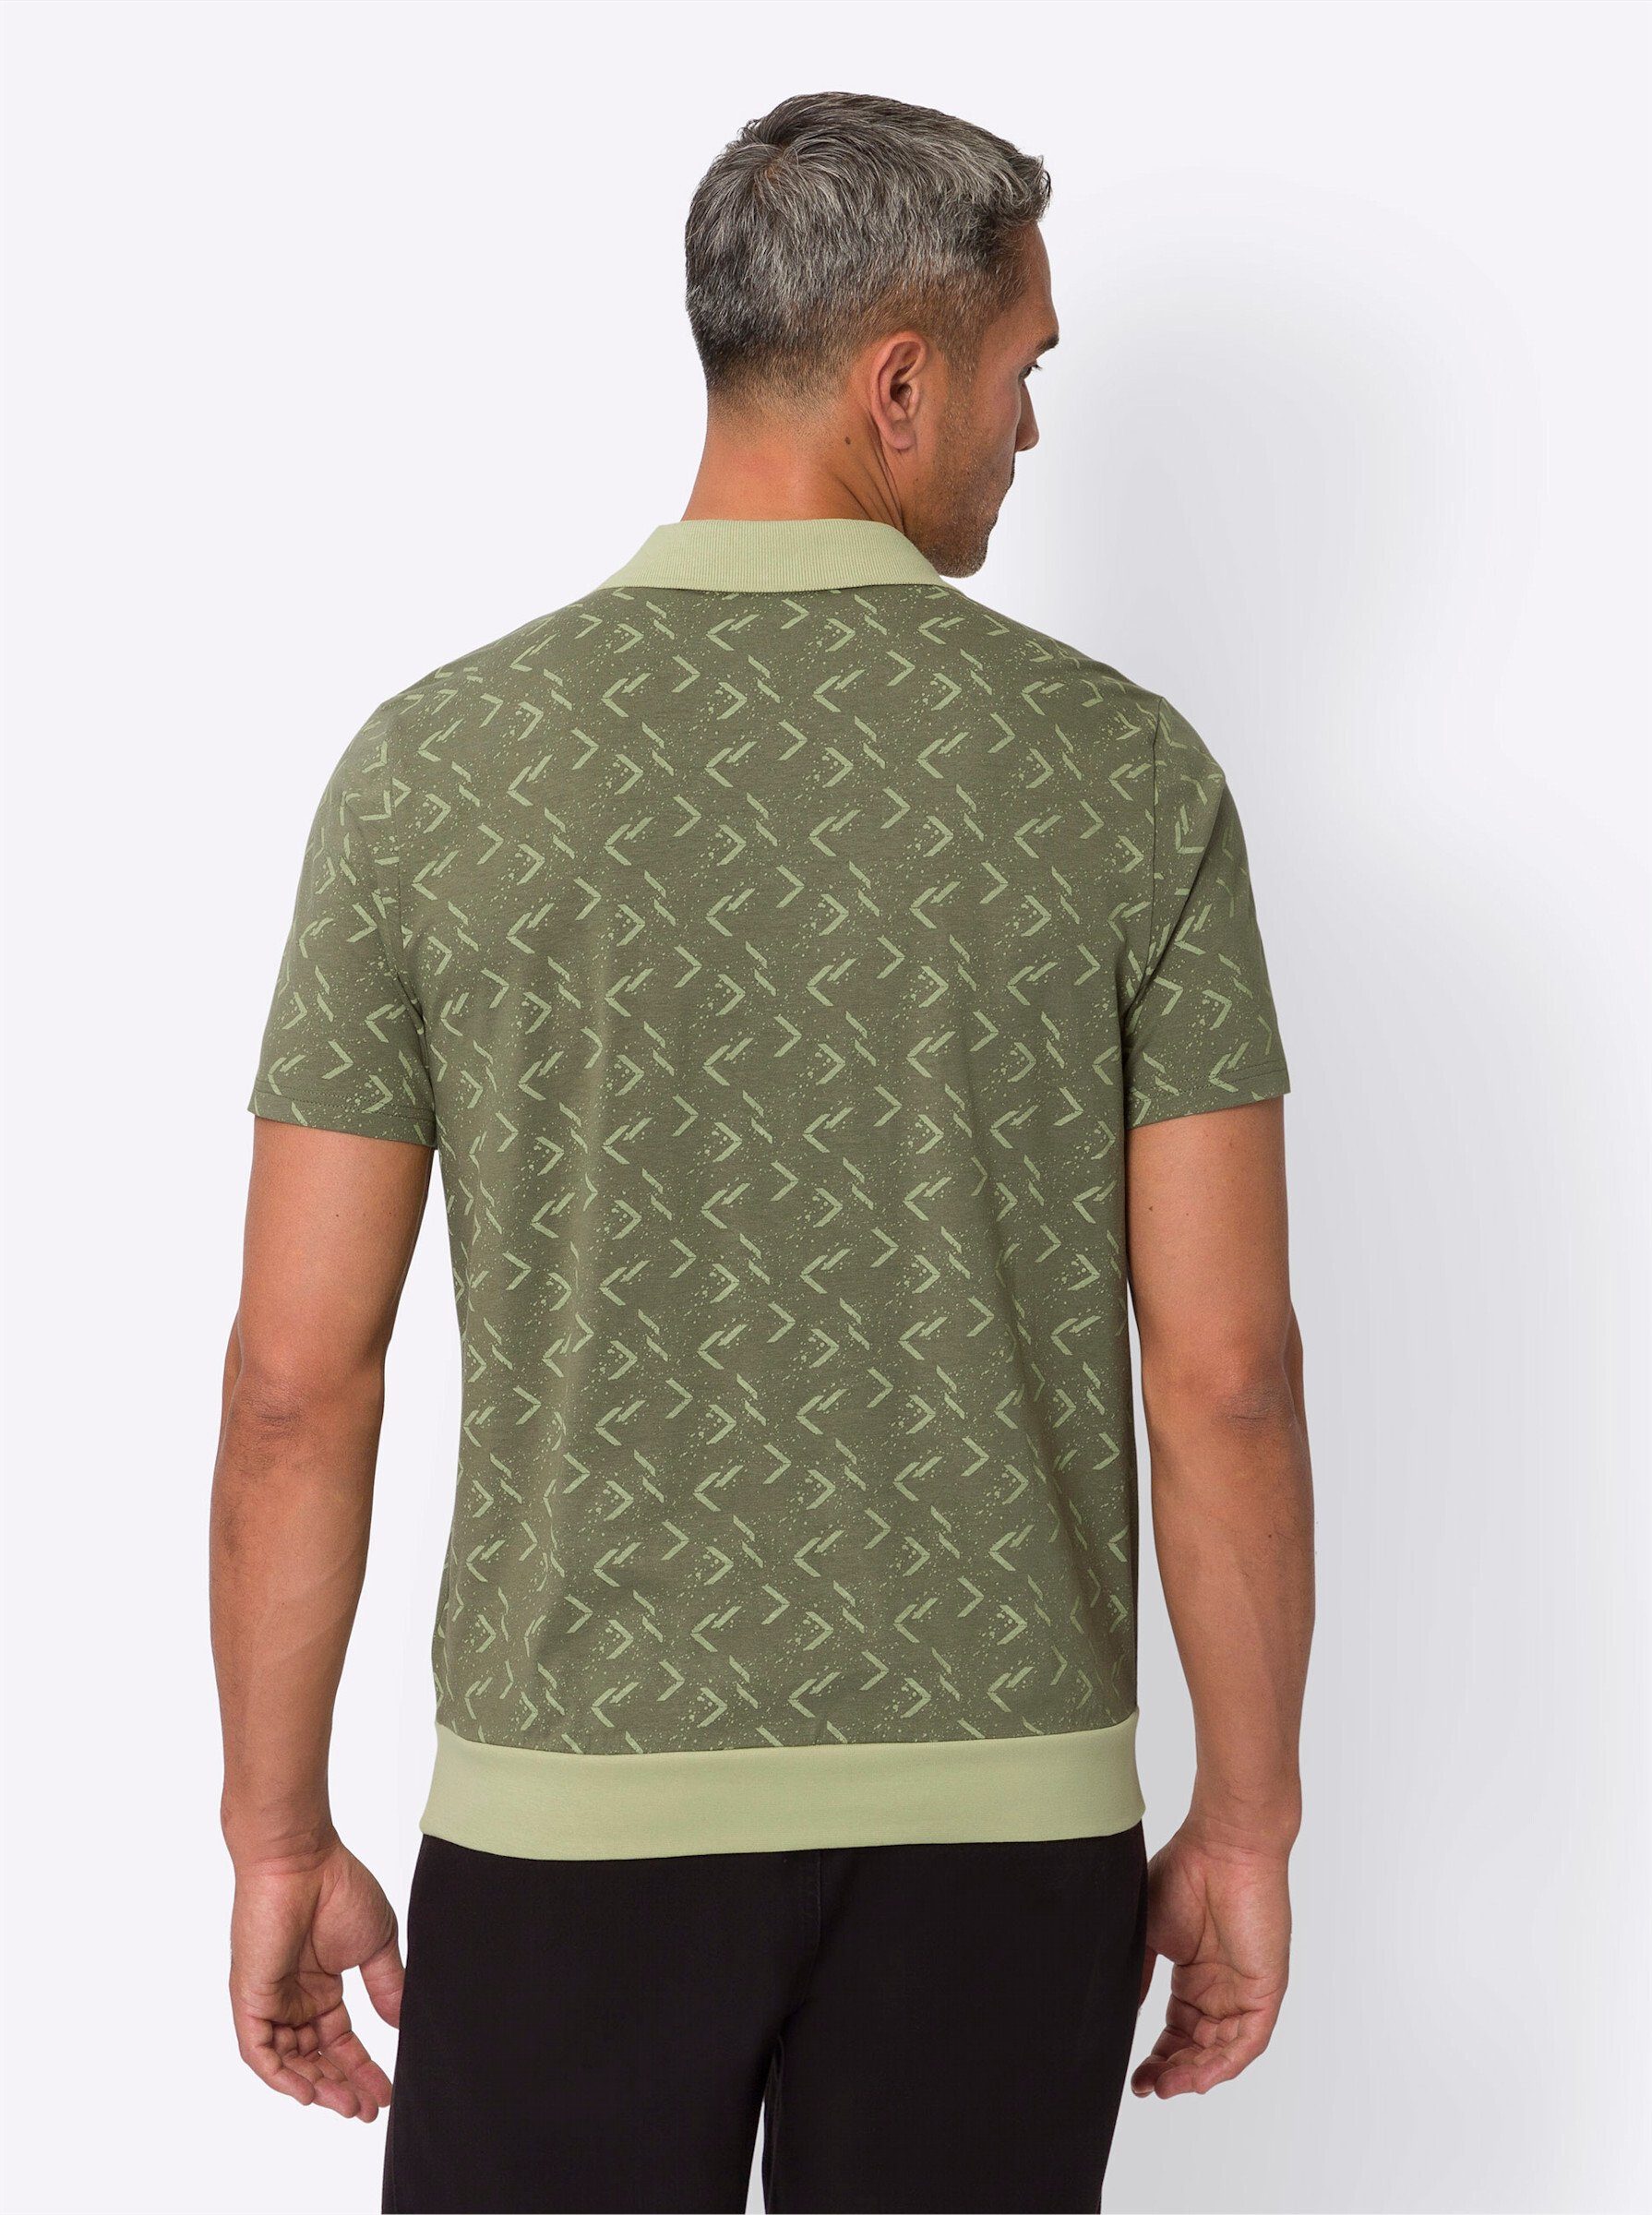 Sieh an! T-Shirt khaki-lindgrün-bedruckt